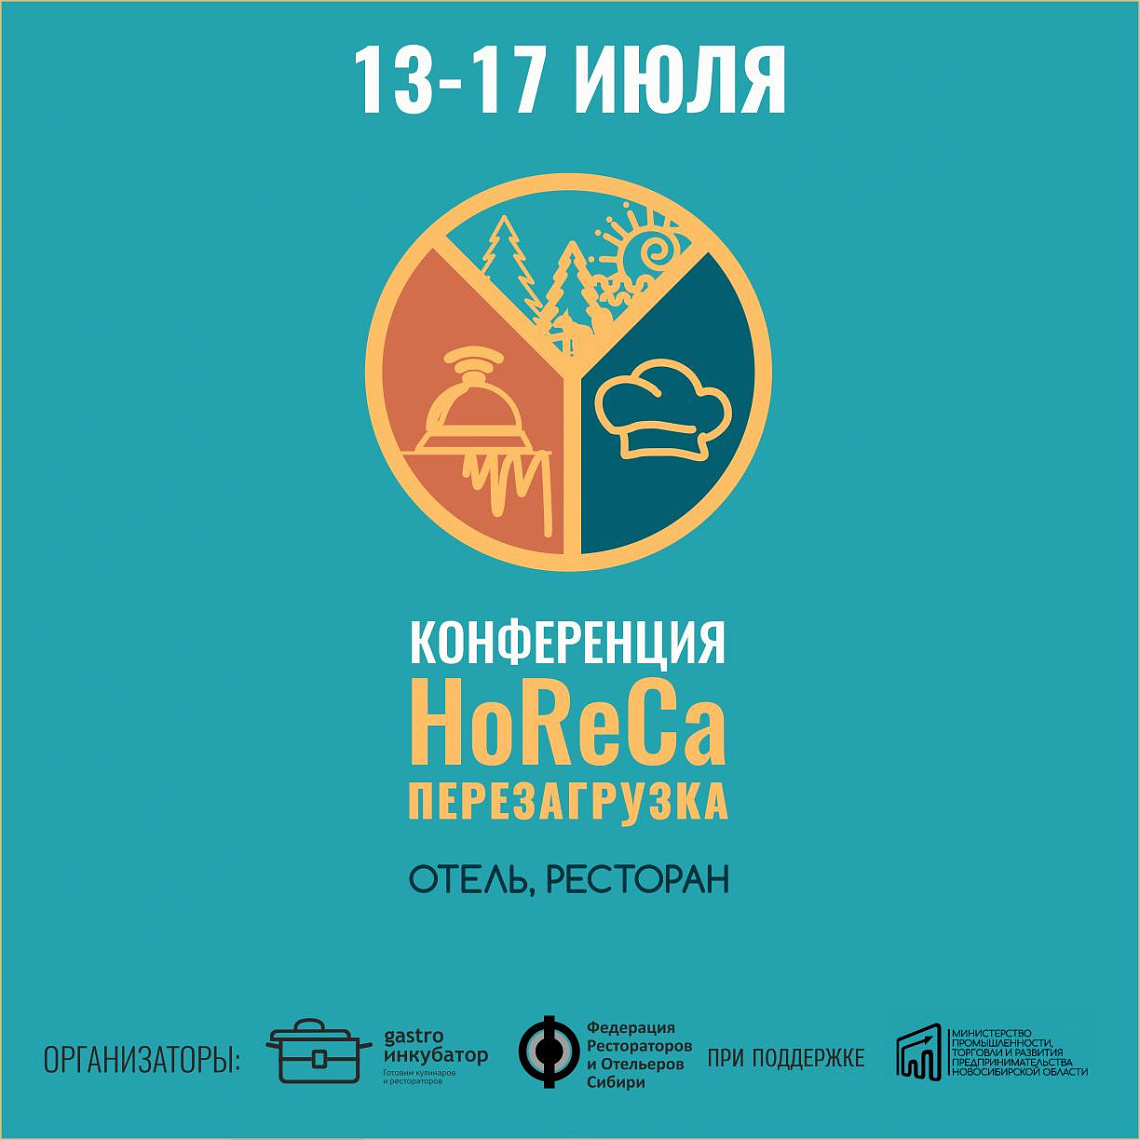 Для бизнесменов индустрии гостеприимства пройдёт онлайн-конференция “HoReCa. Перезагрузка”